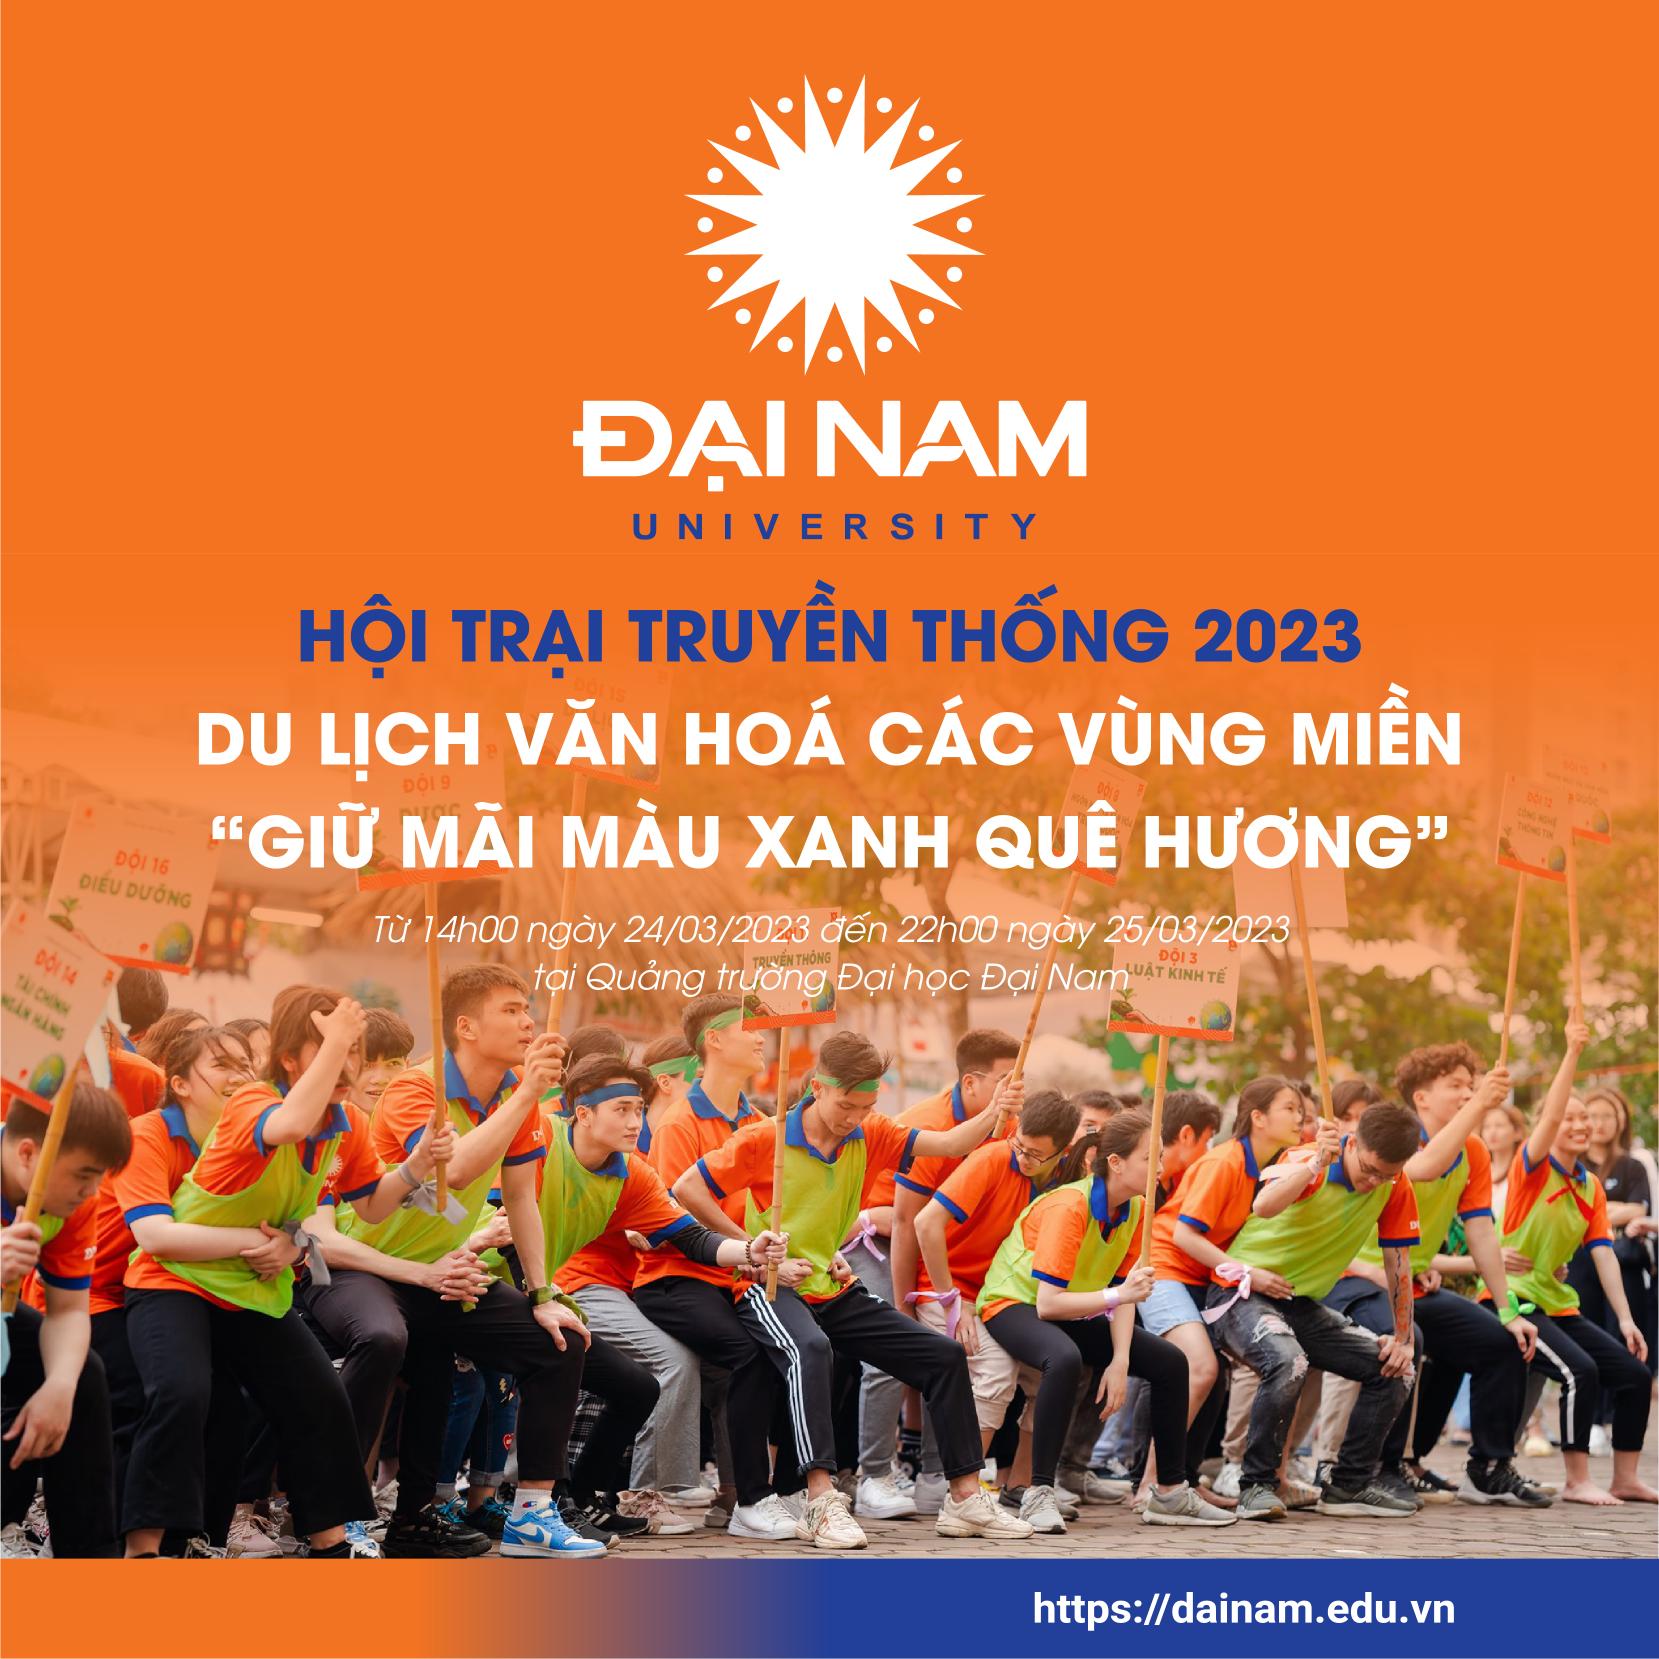 hoi-trai-truyen-thong-2023-du-lich-van-hoa-cac-vung-mien-giu-mai-mau-xanh-que-huong